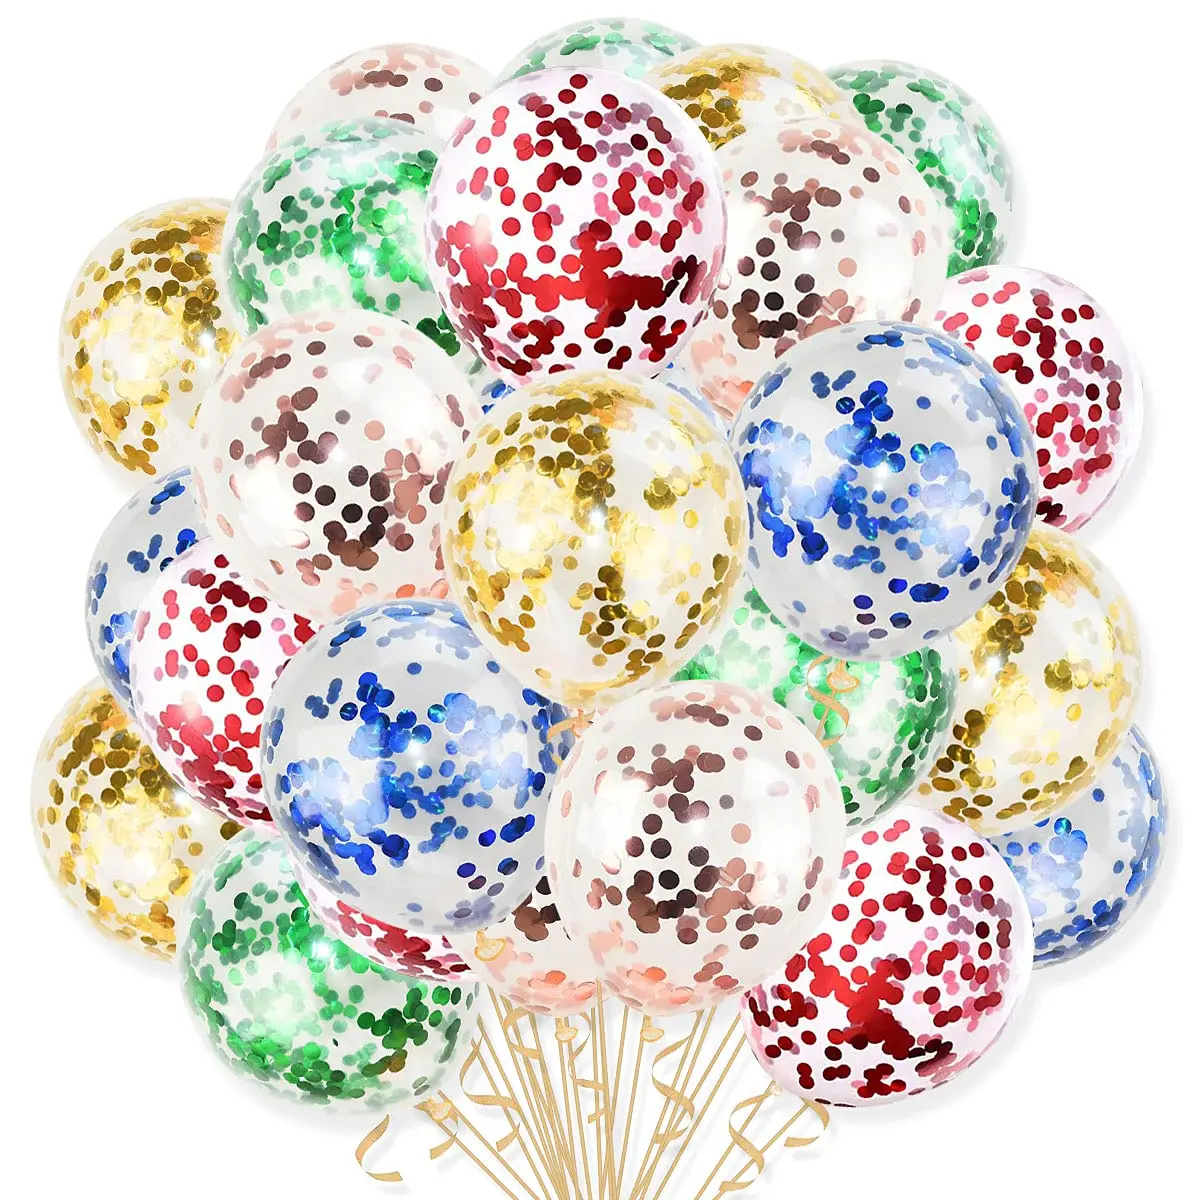 

24 шт./упак. воздушный шар конфетти для украшения свадьбы, дня рождения, прозрачный латексный баллон с конфетти из металлической фольги